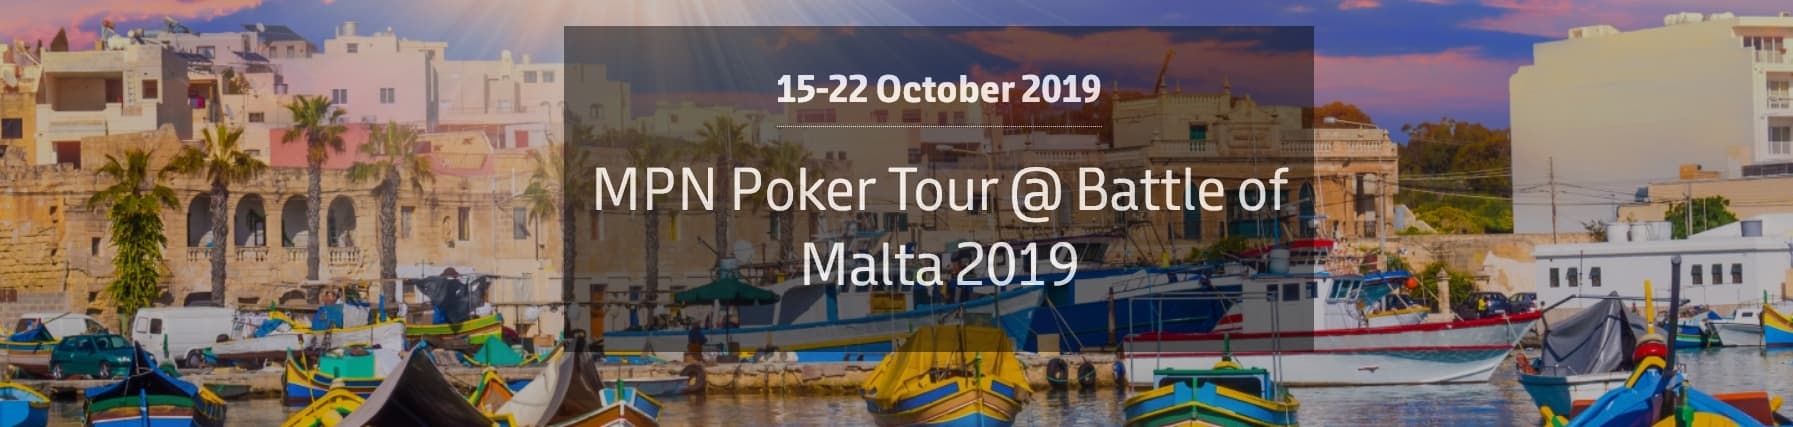 Blowout и битва на Мальте от Red Star Poker